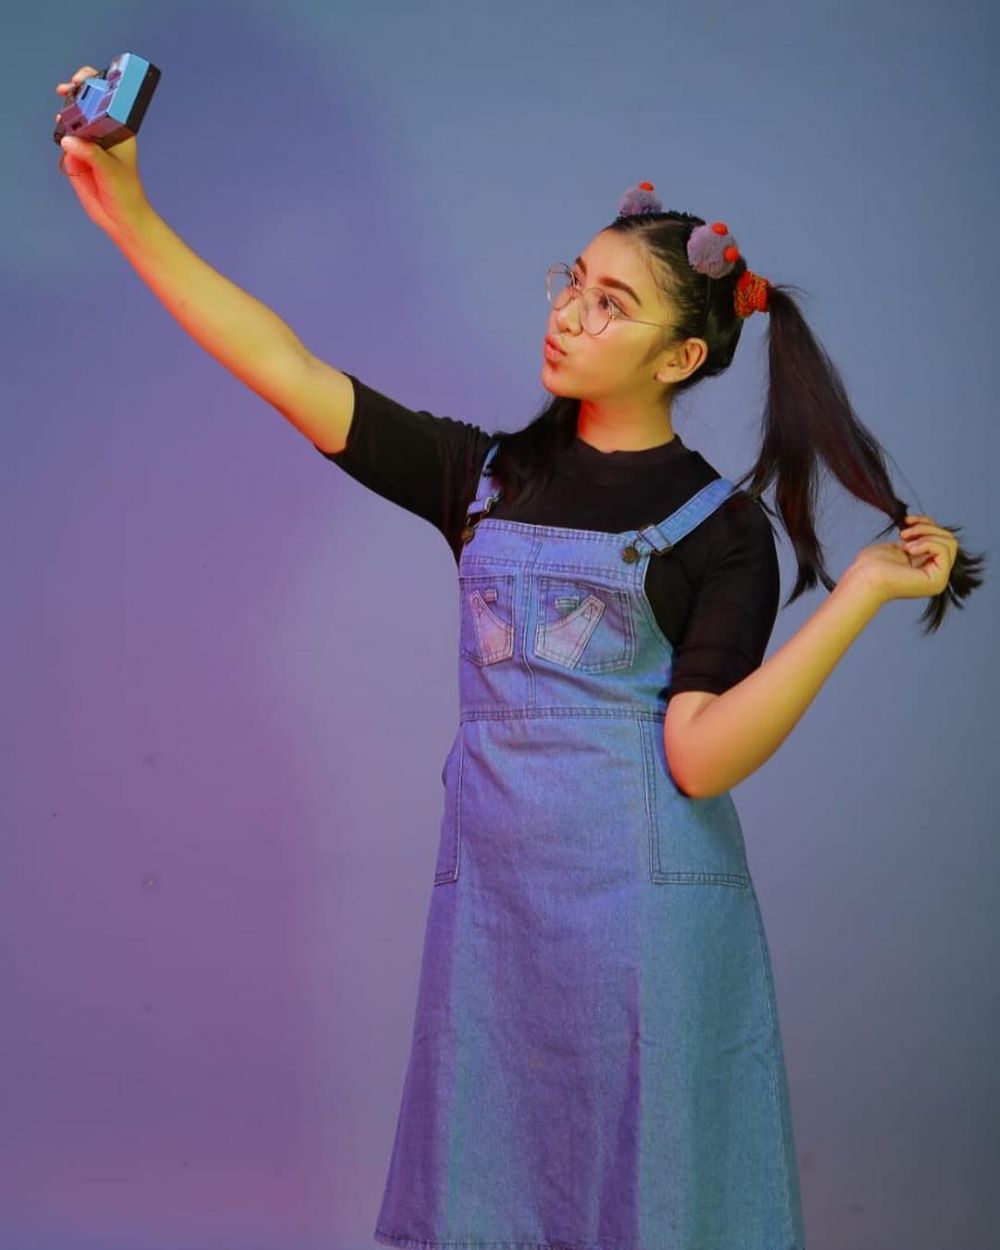 8 Gaya outfit Tiara Indonesian Idol yang chic, bisa jadi inspirasi